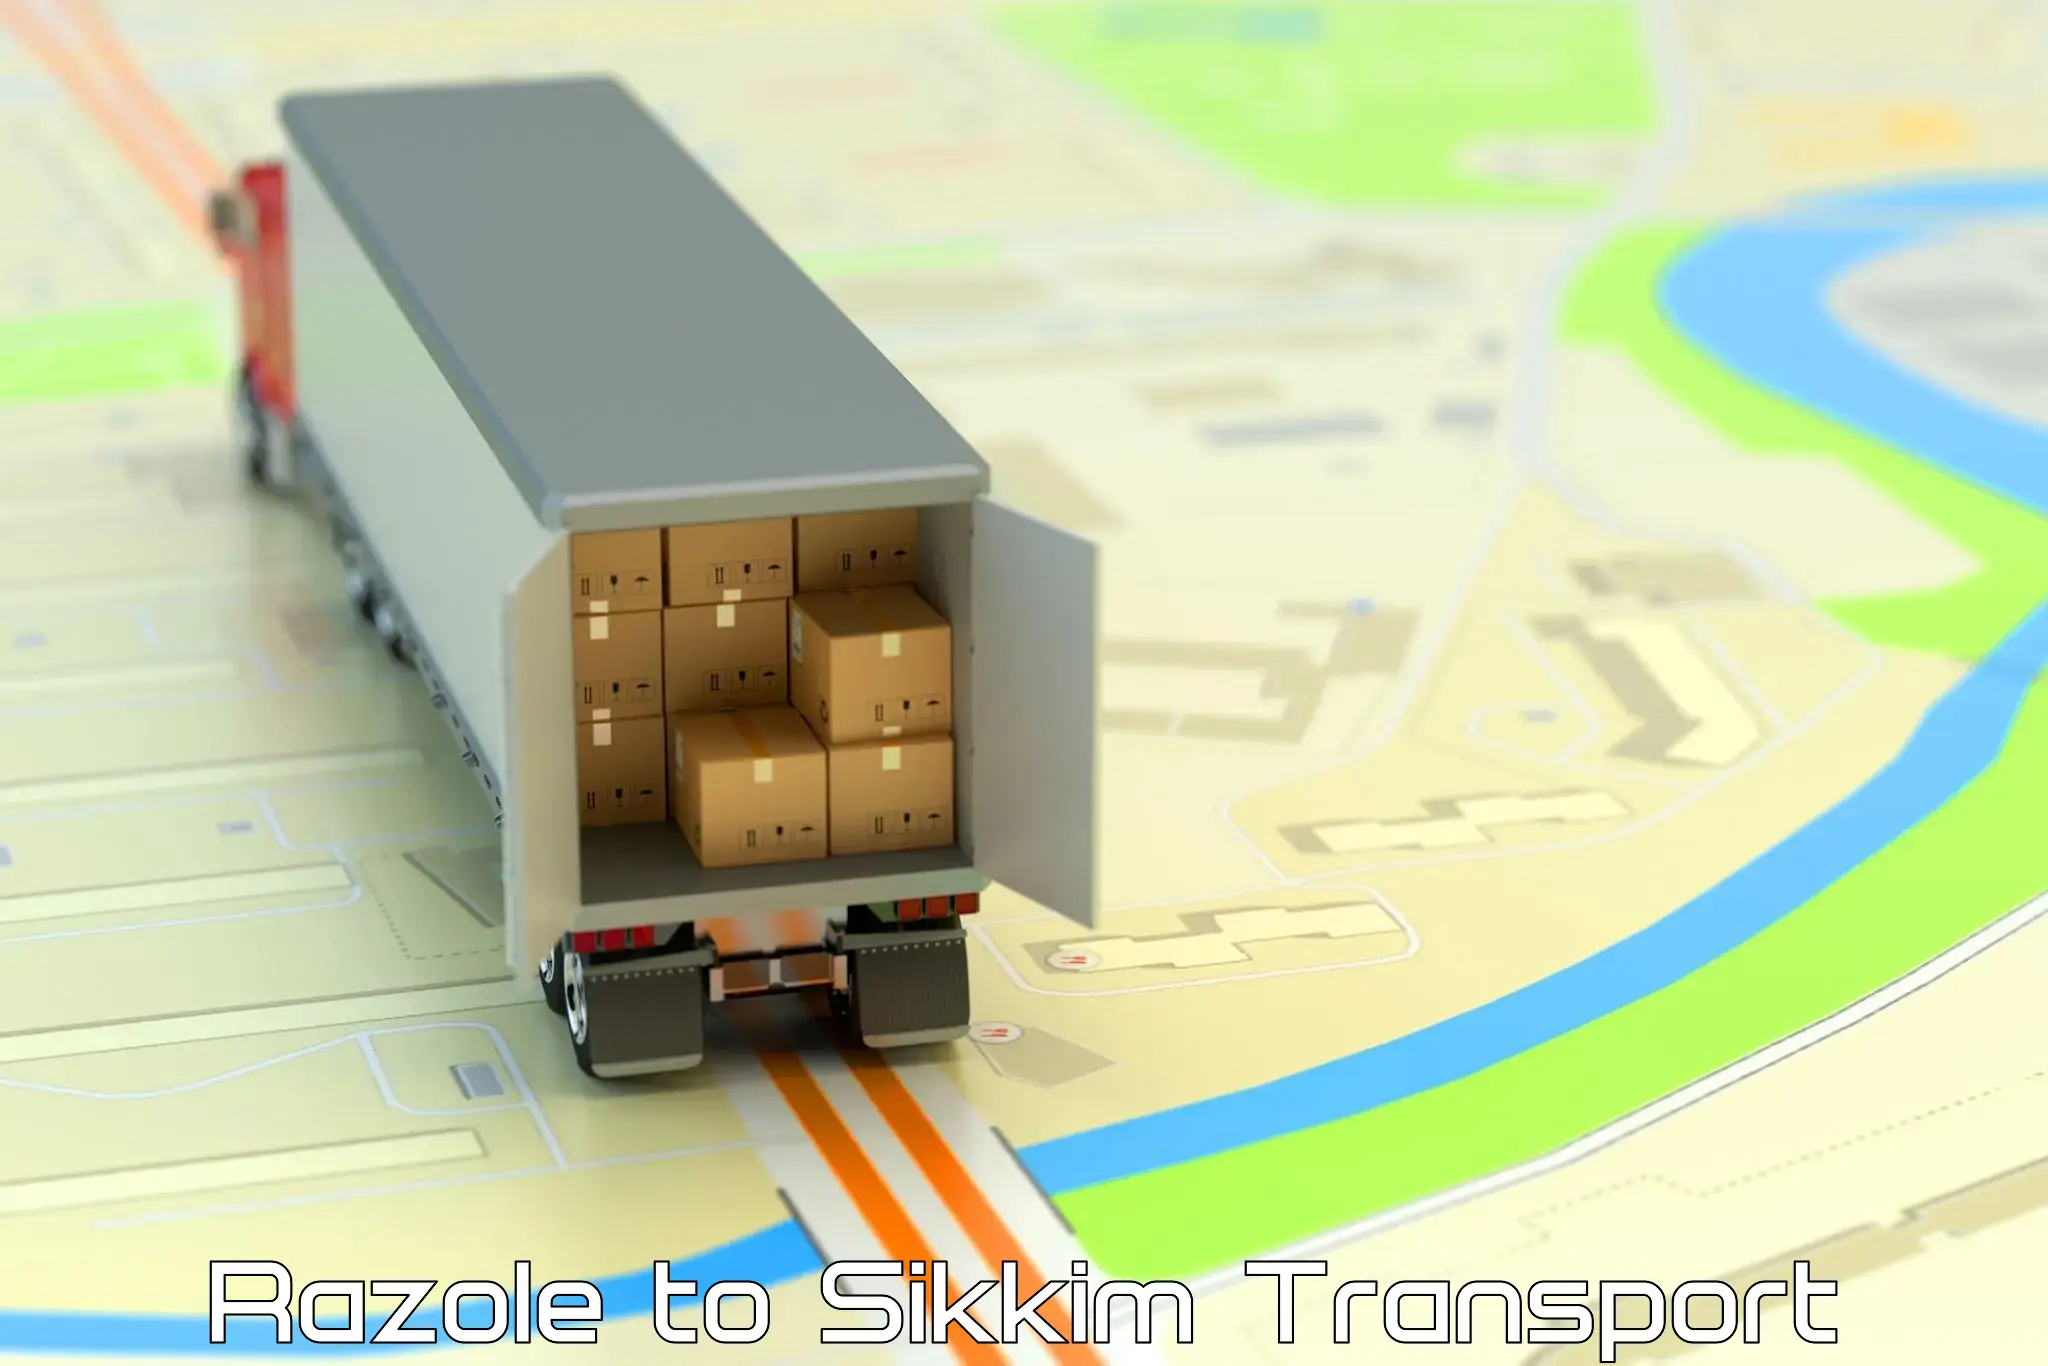 Pick up transport service Razole to Mangan